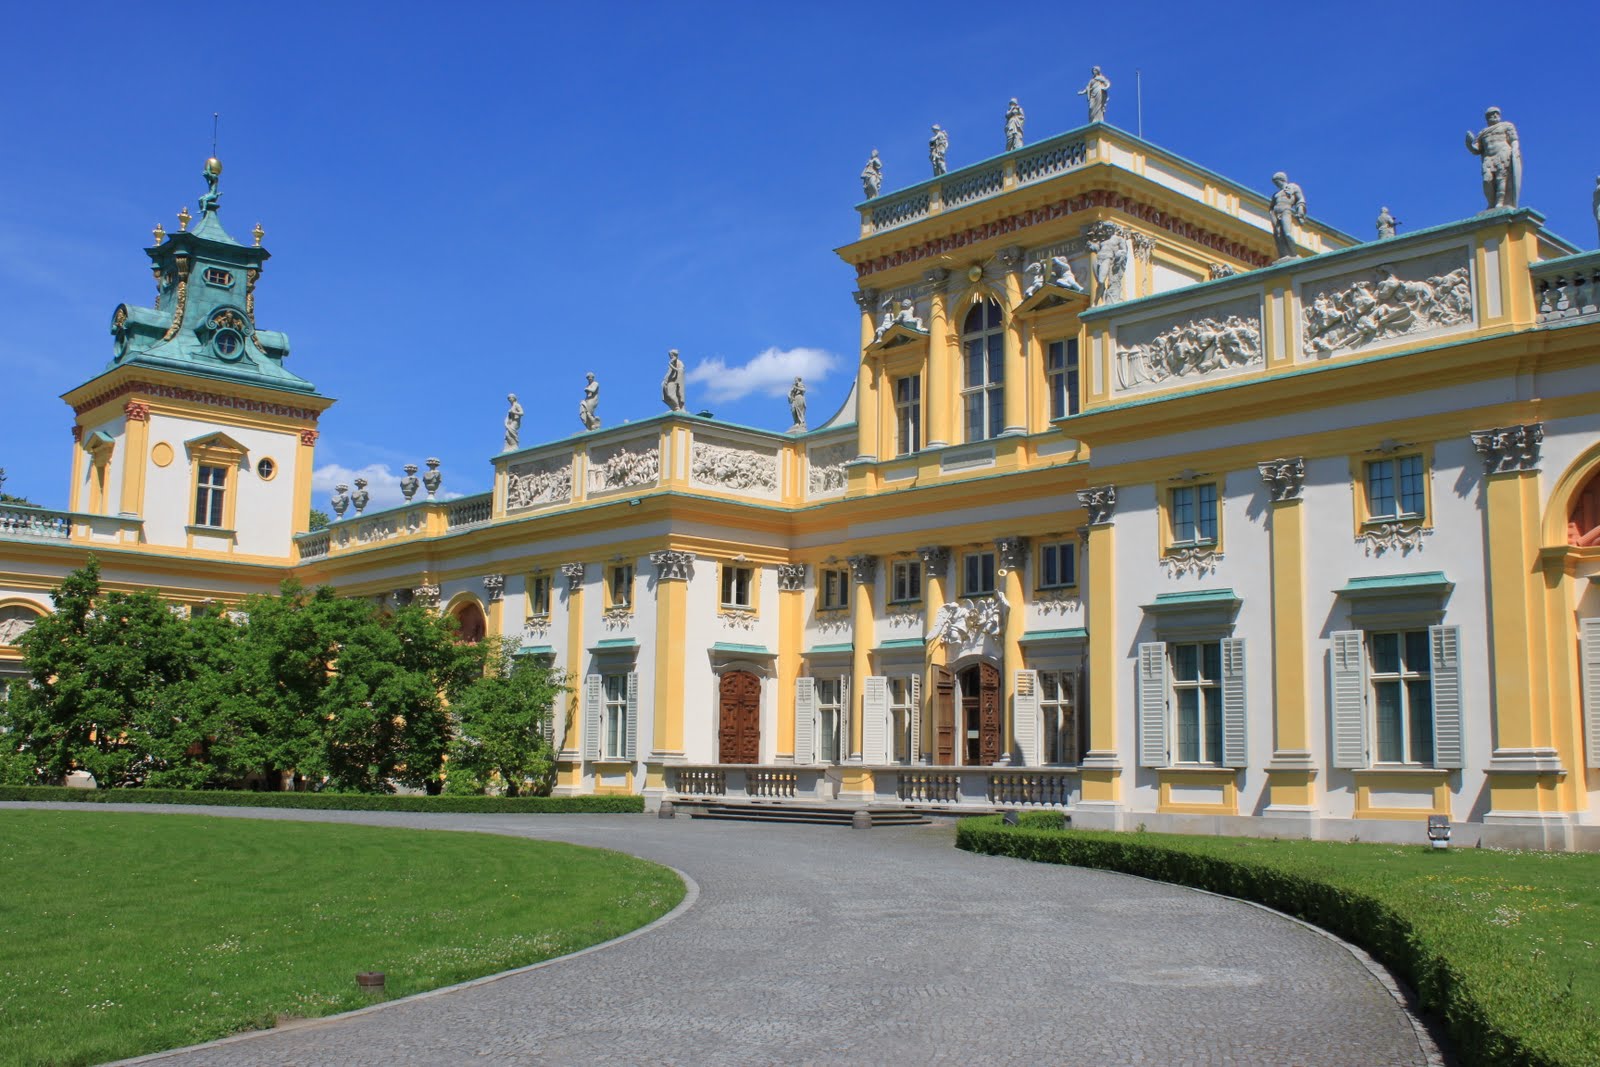  Cung điện Hoàng gia Wilanow 